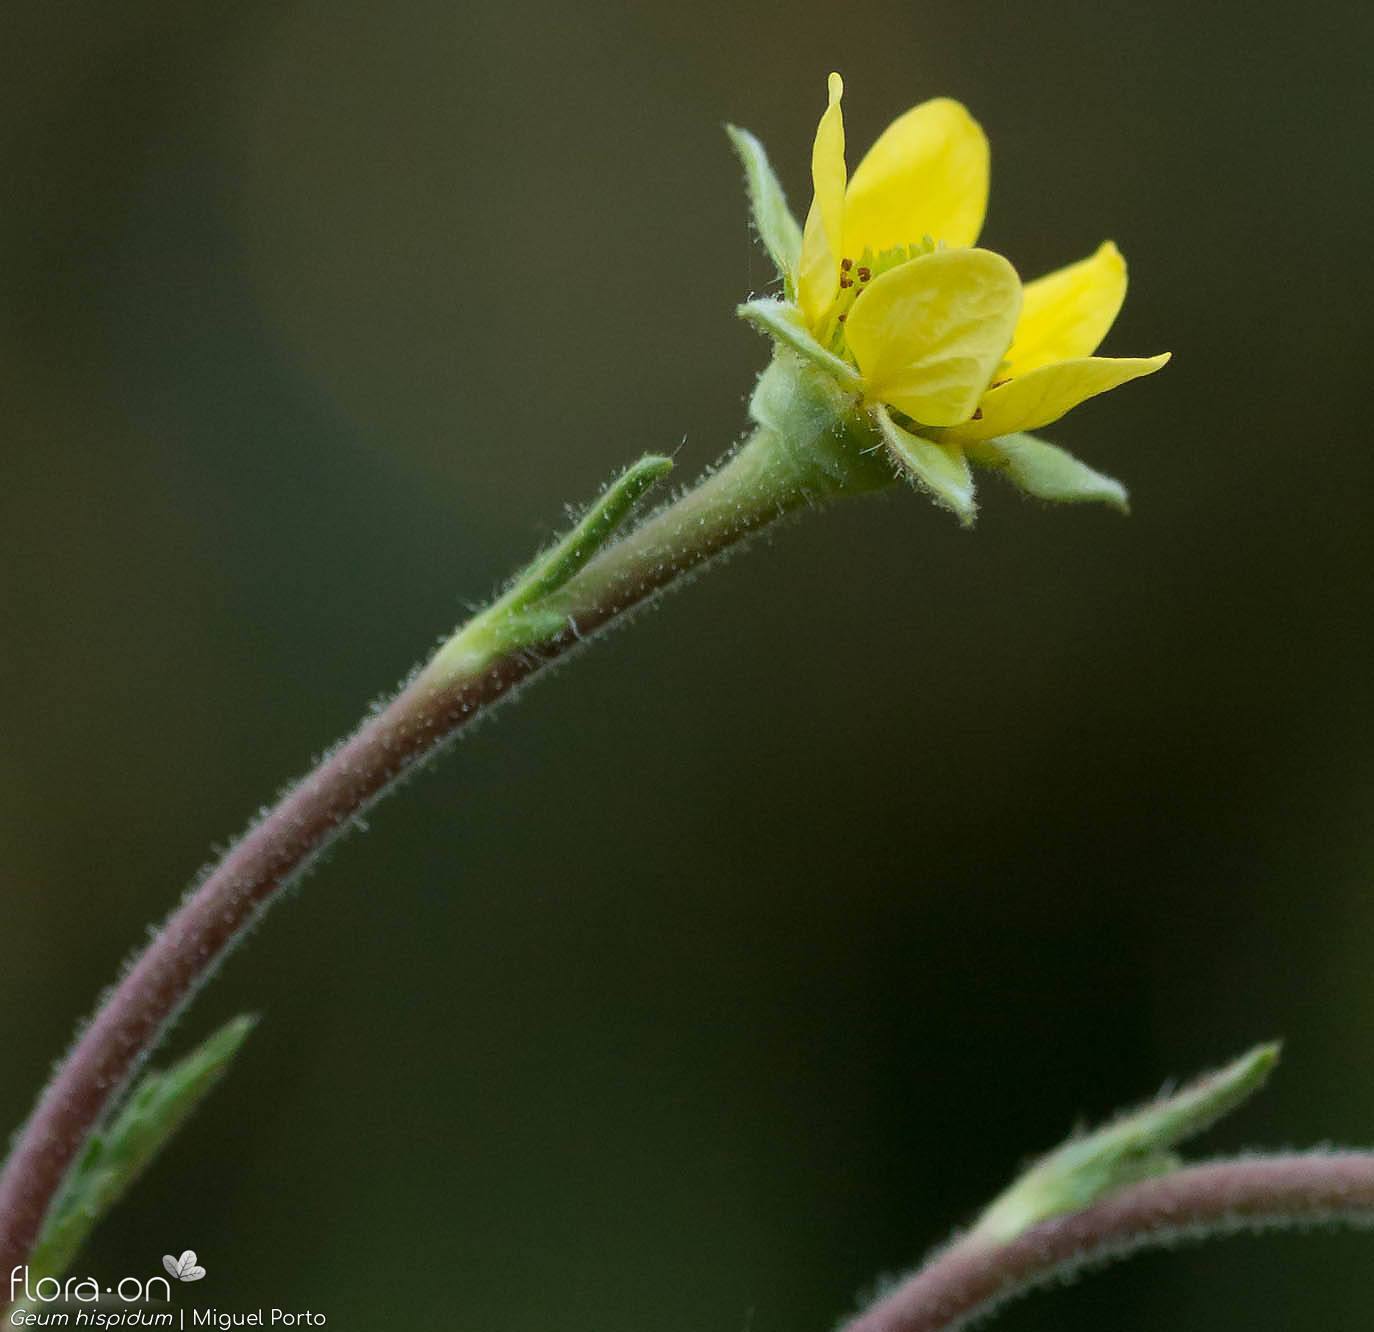 Geum hispidum - Flor (close-up) | Miguel Porto; CC BY-NC 4.0